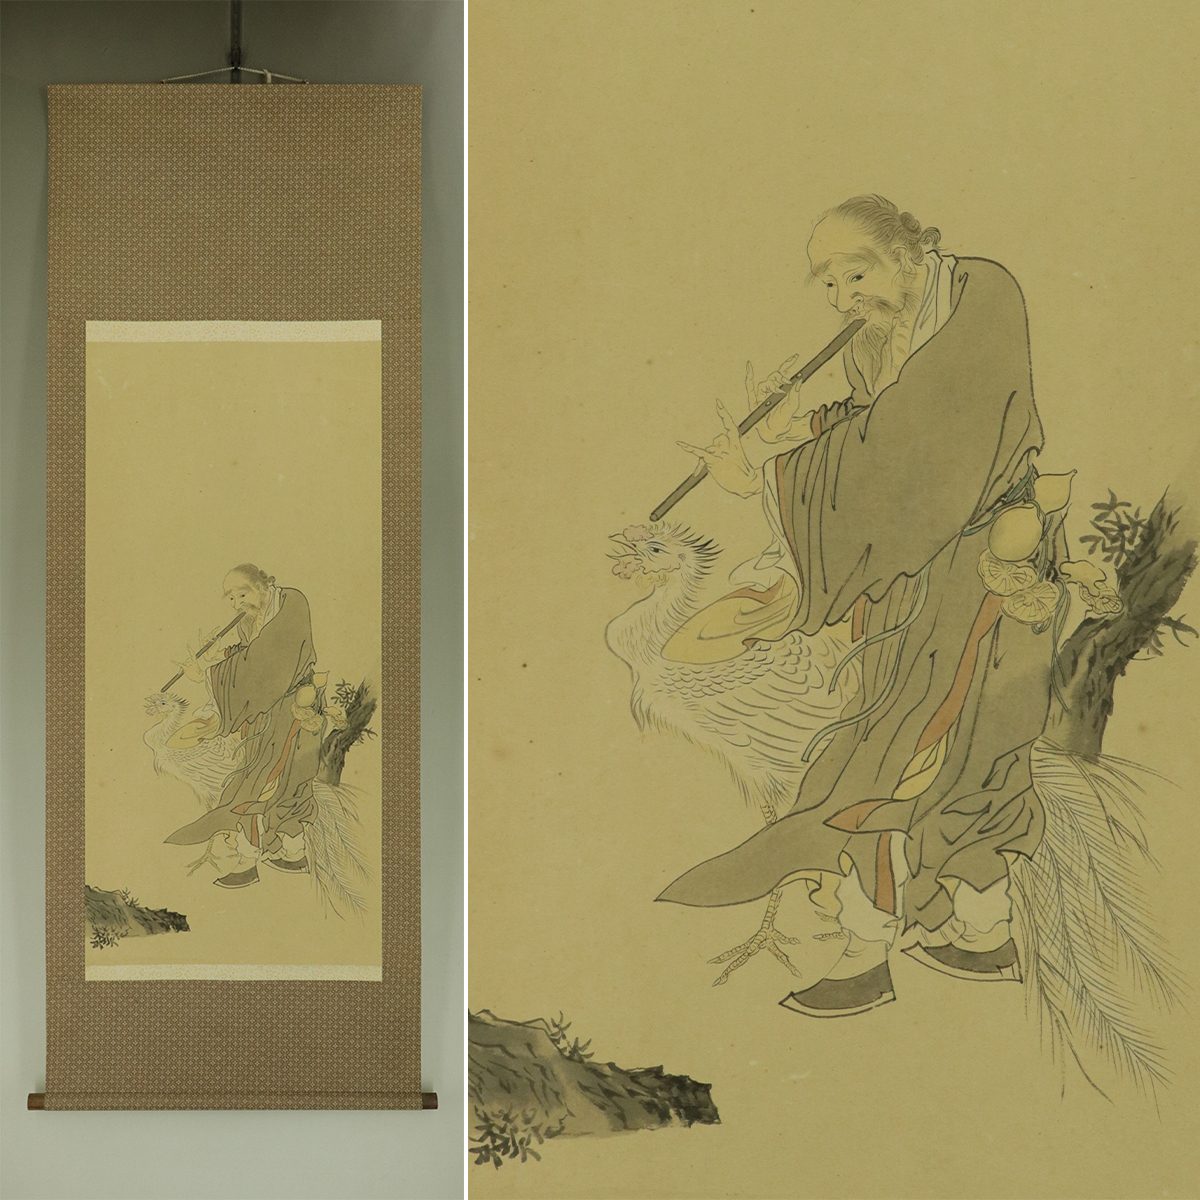 [Manuscrit] Peinture ancienne [Ermite paon] ◆ Livre de poche ◆ Parchemin suspendu u12030b, peinture, Peinture japonaise, personne, Bodhisattva